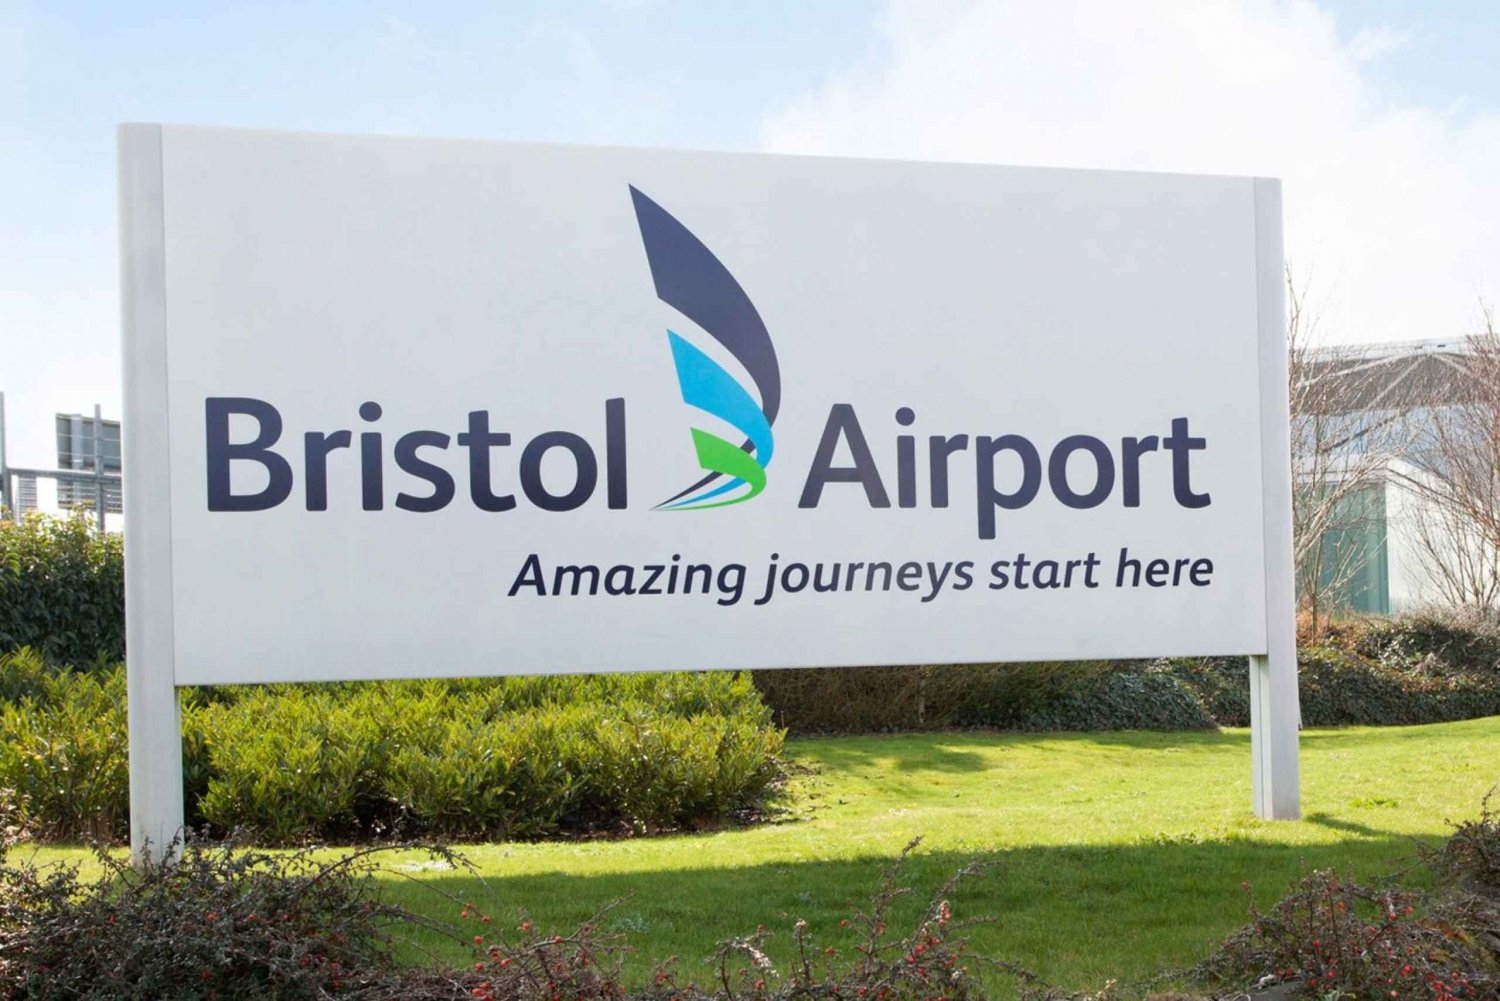 Bristol: Servizi di autobus espresso tra l'aeroporto e la città